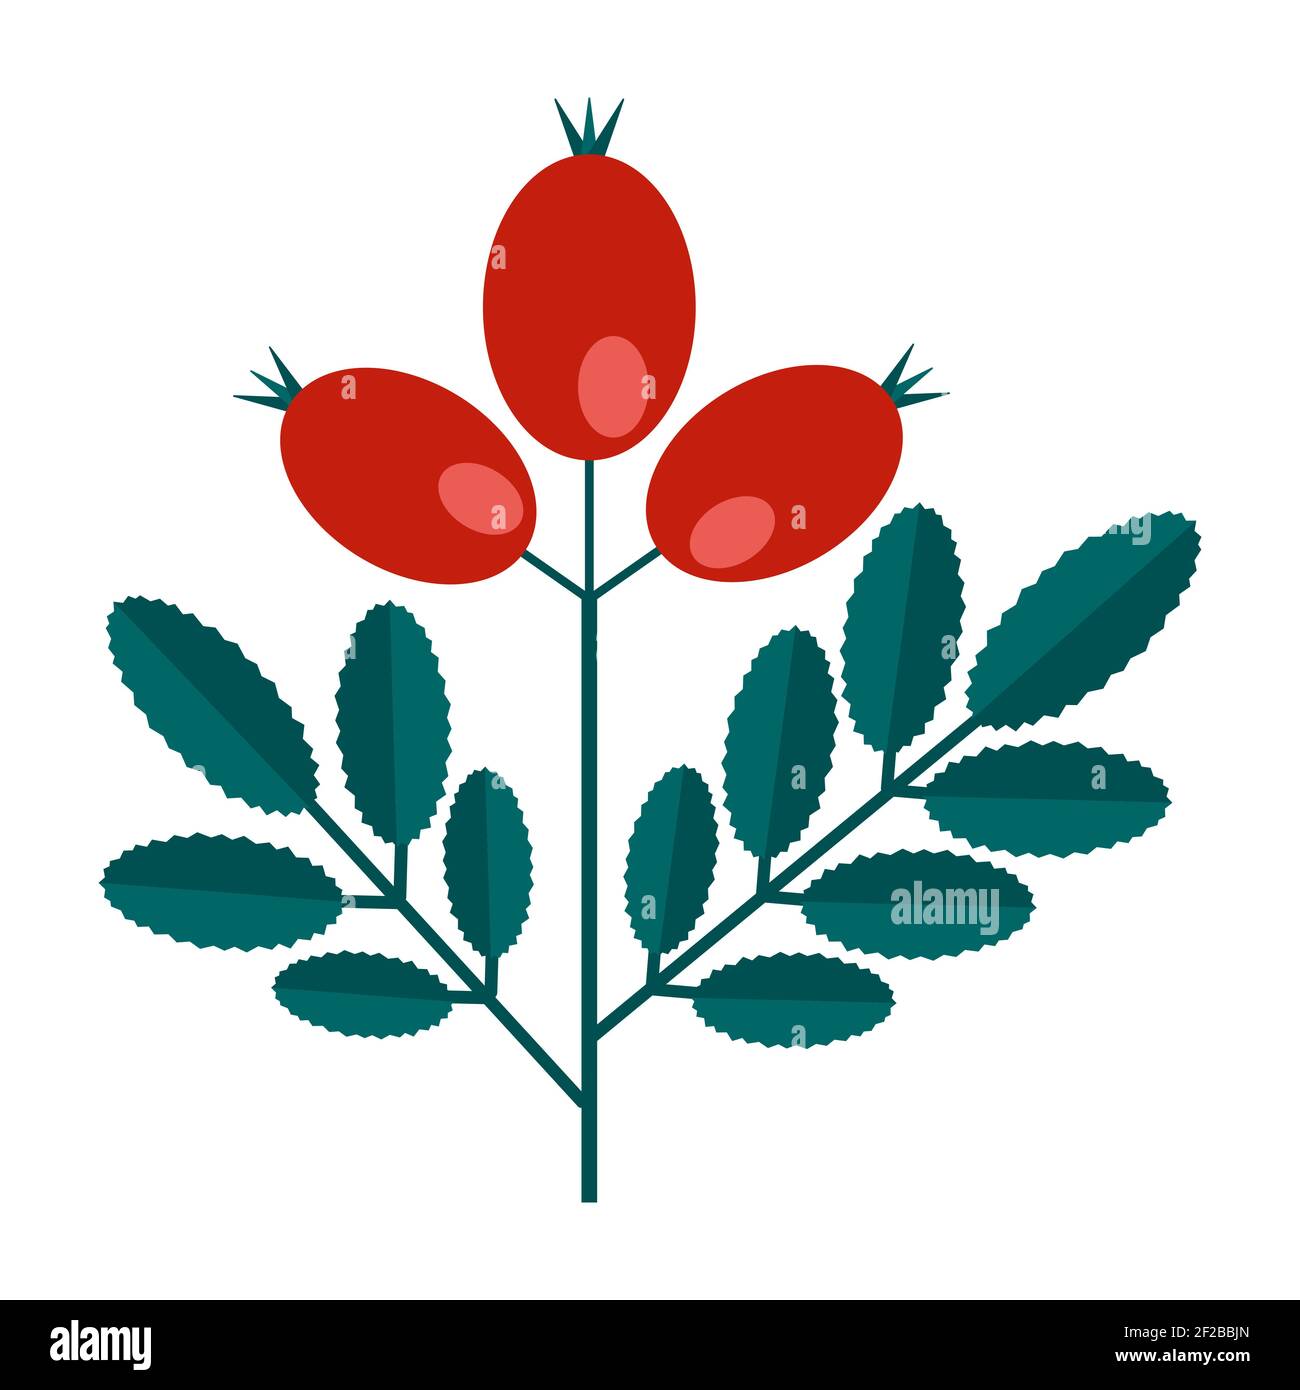 Simple branche verte minimaliste d'un dogrose avec des feuilles et des baies rouges. Collection florale de plantes élégantes et colorées pour une décoration de saison. Styli Illustration de Vecteur